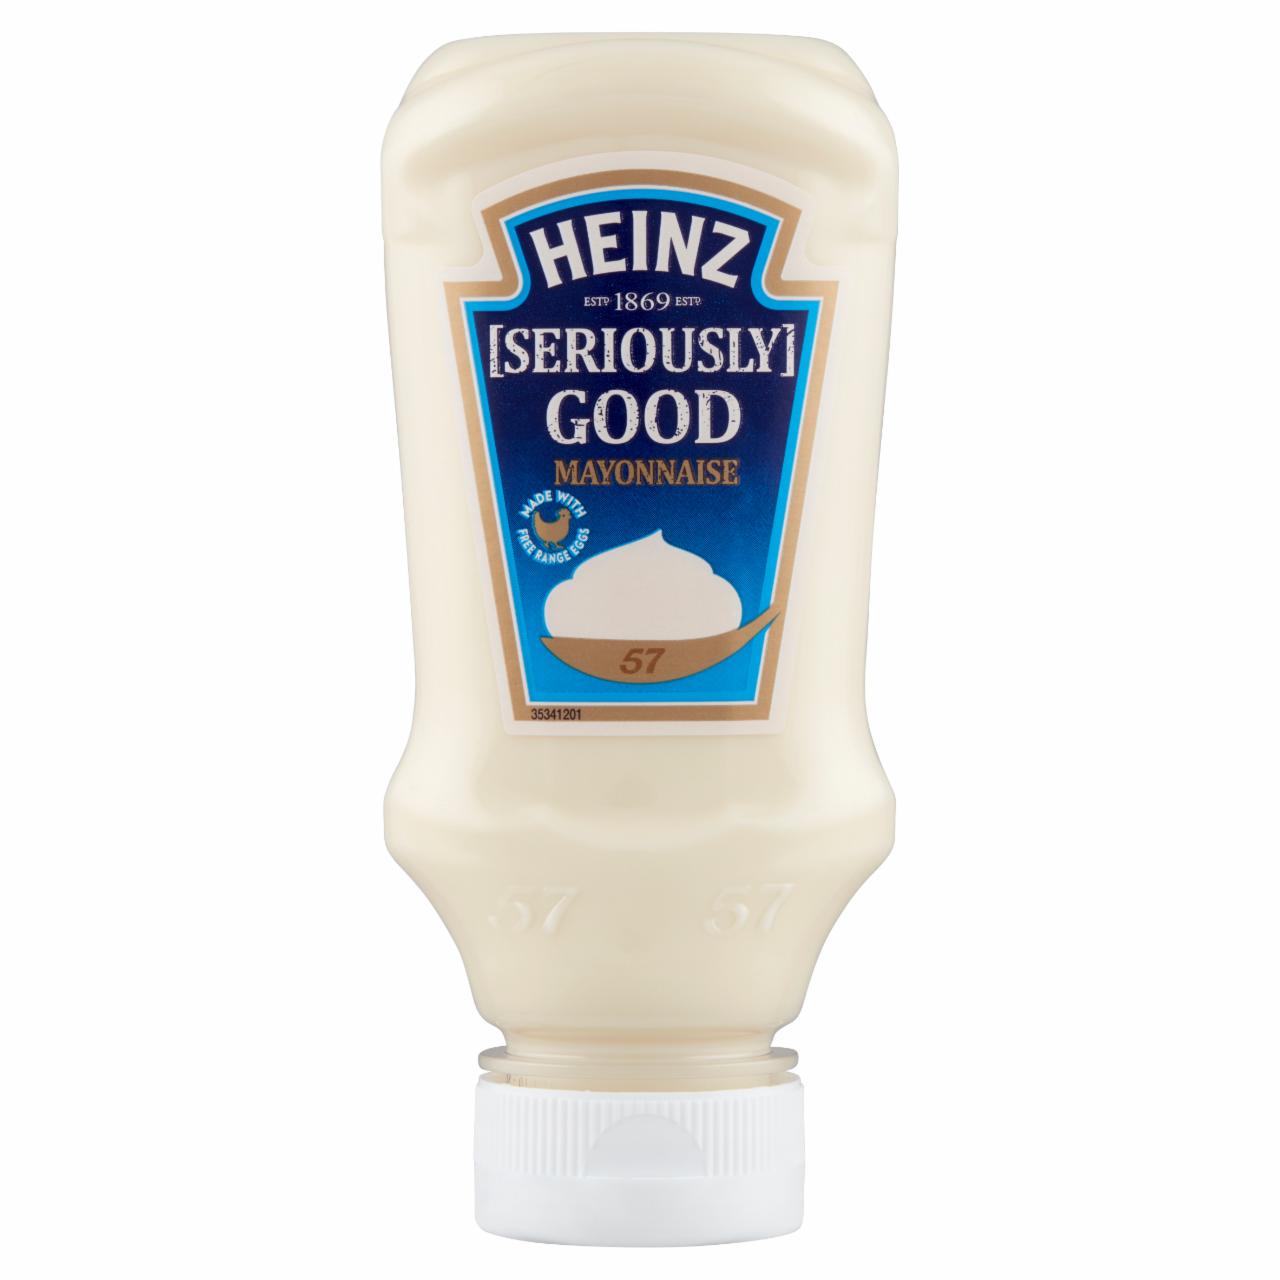 Képek - Heinz majonéz 70% zsírtartalommal 215 g